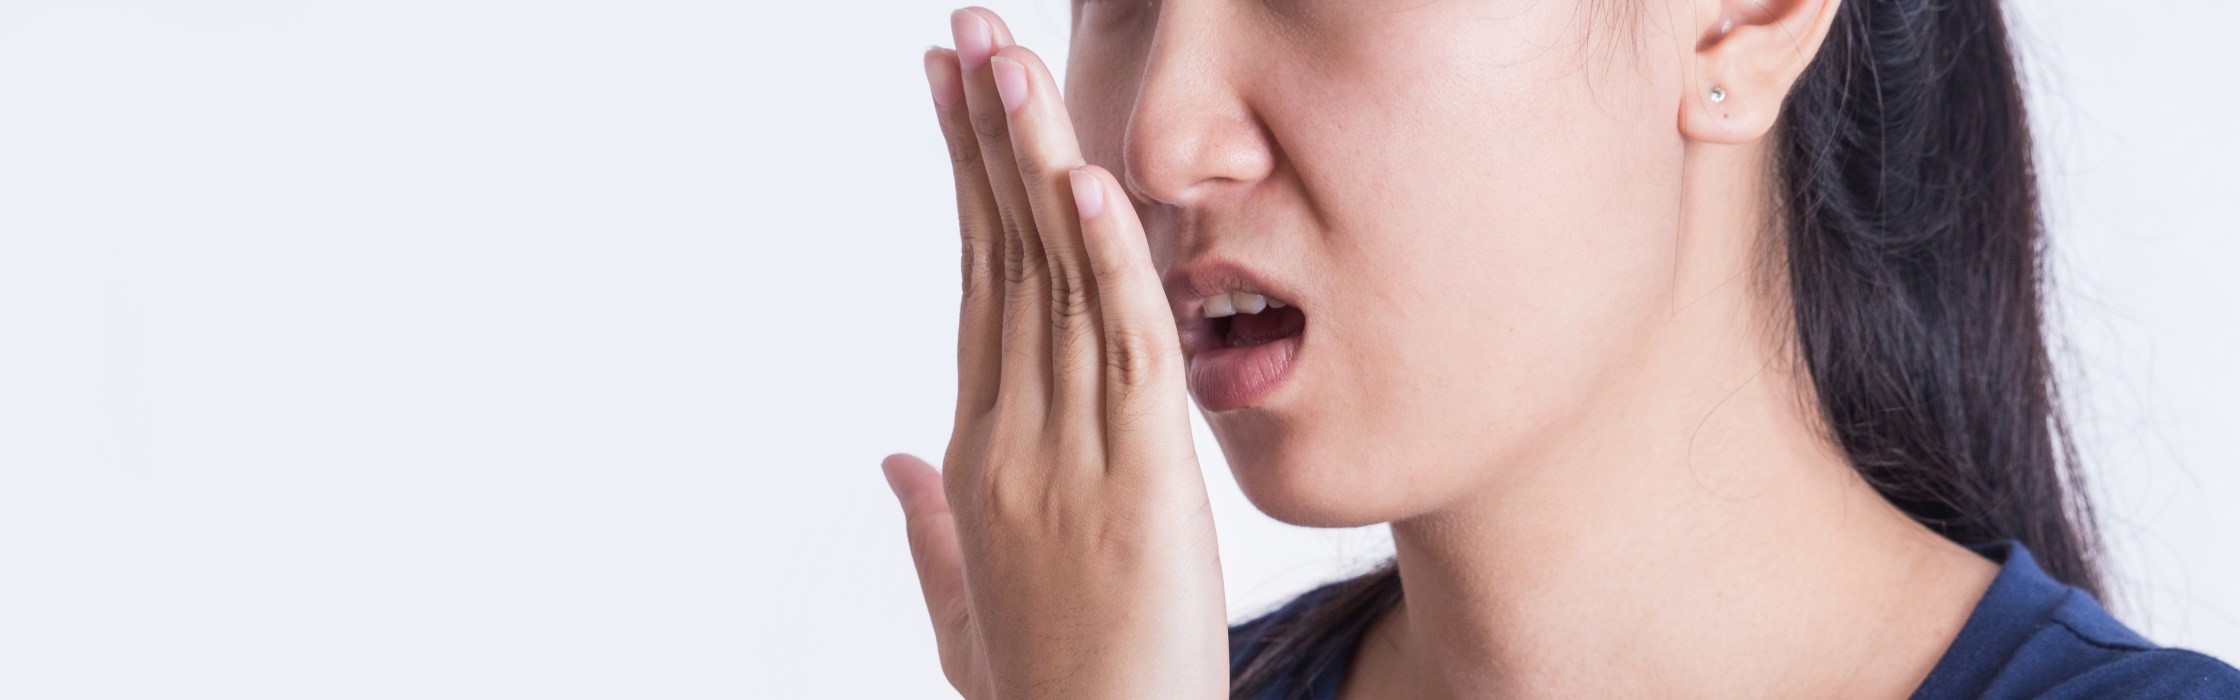 Mundgeruch: Behandlung und Ursachen